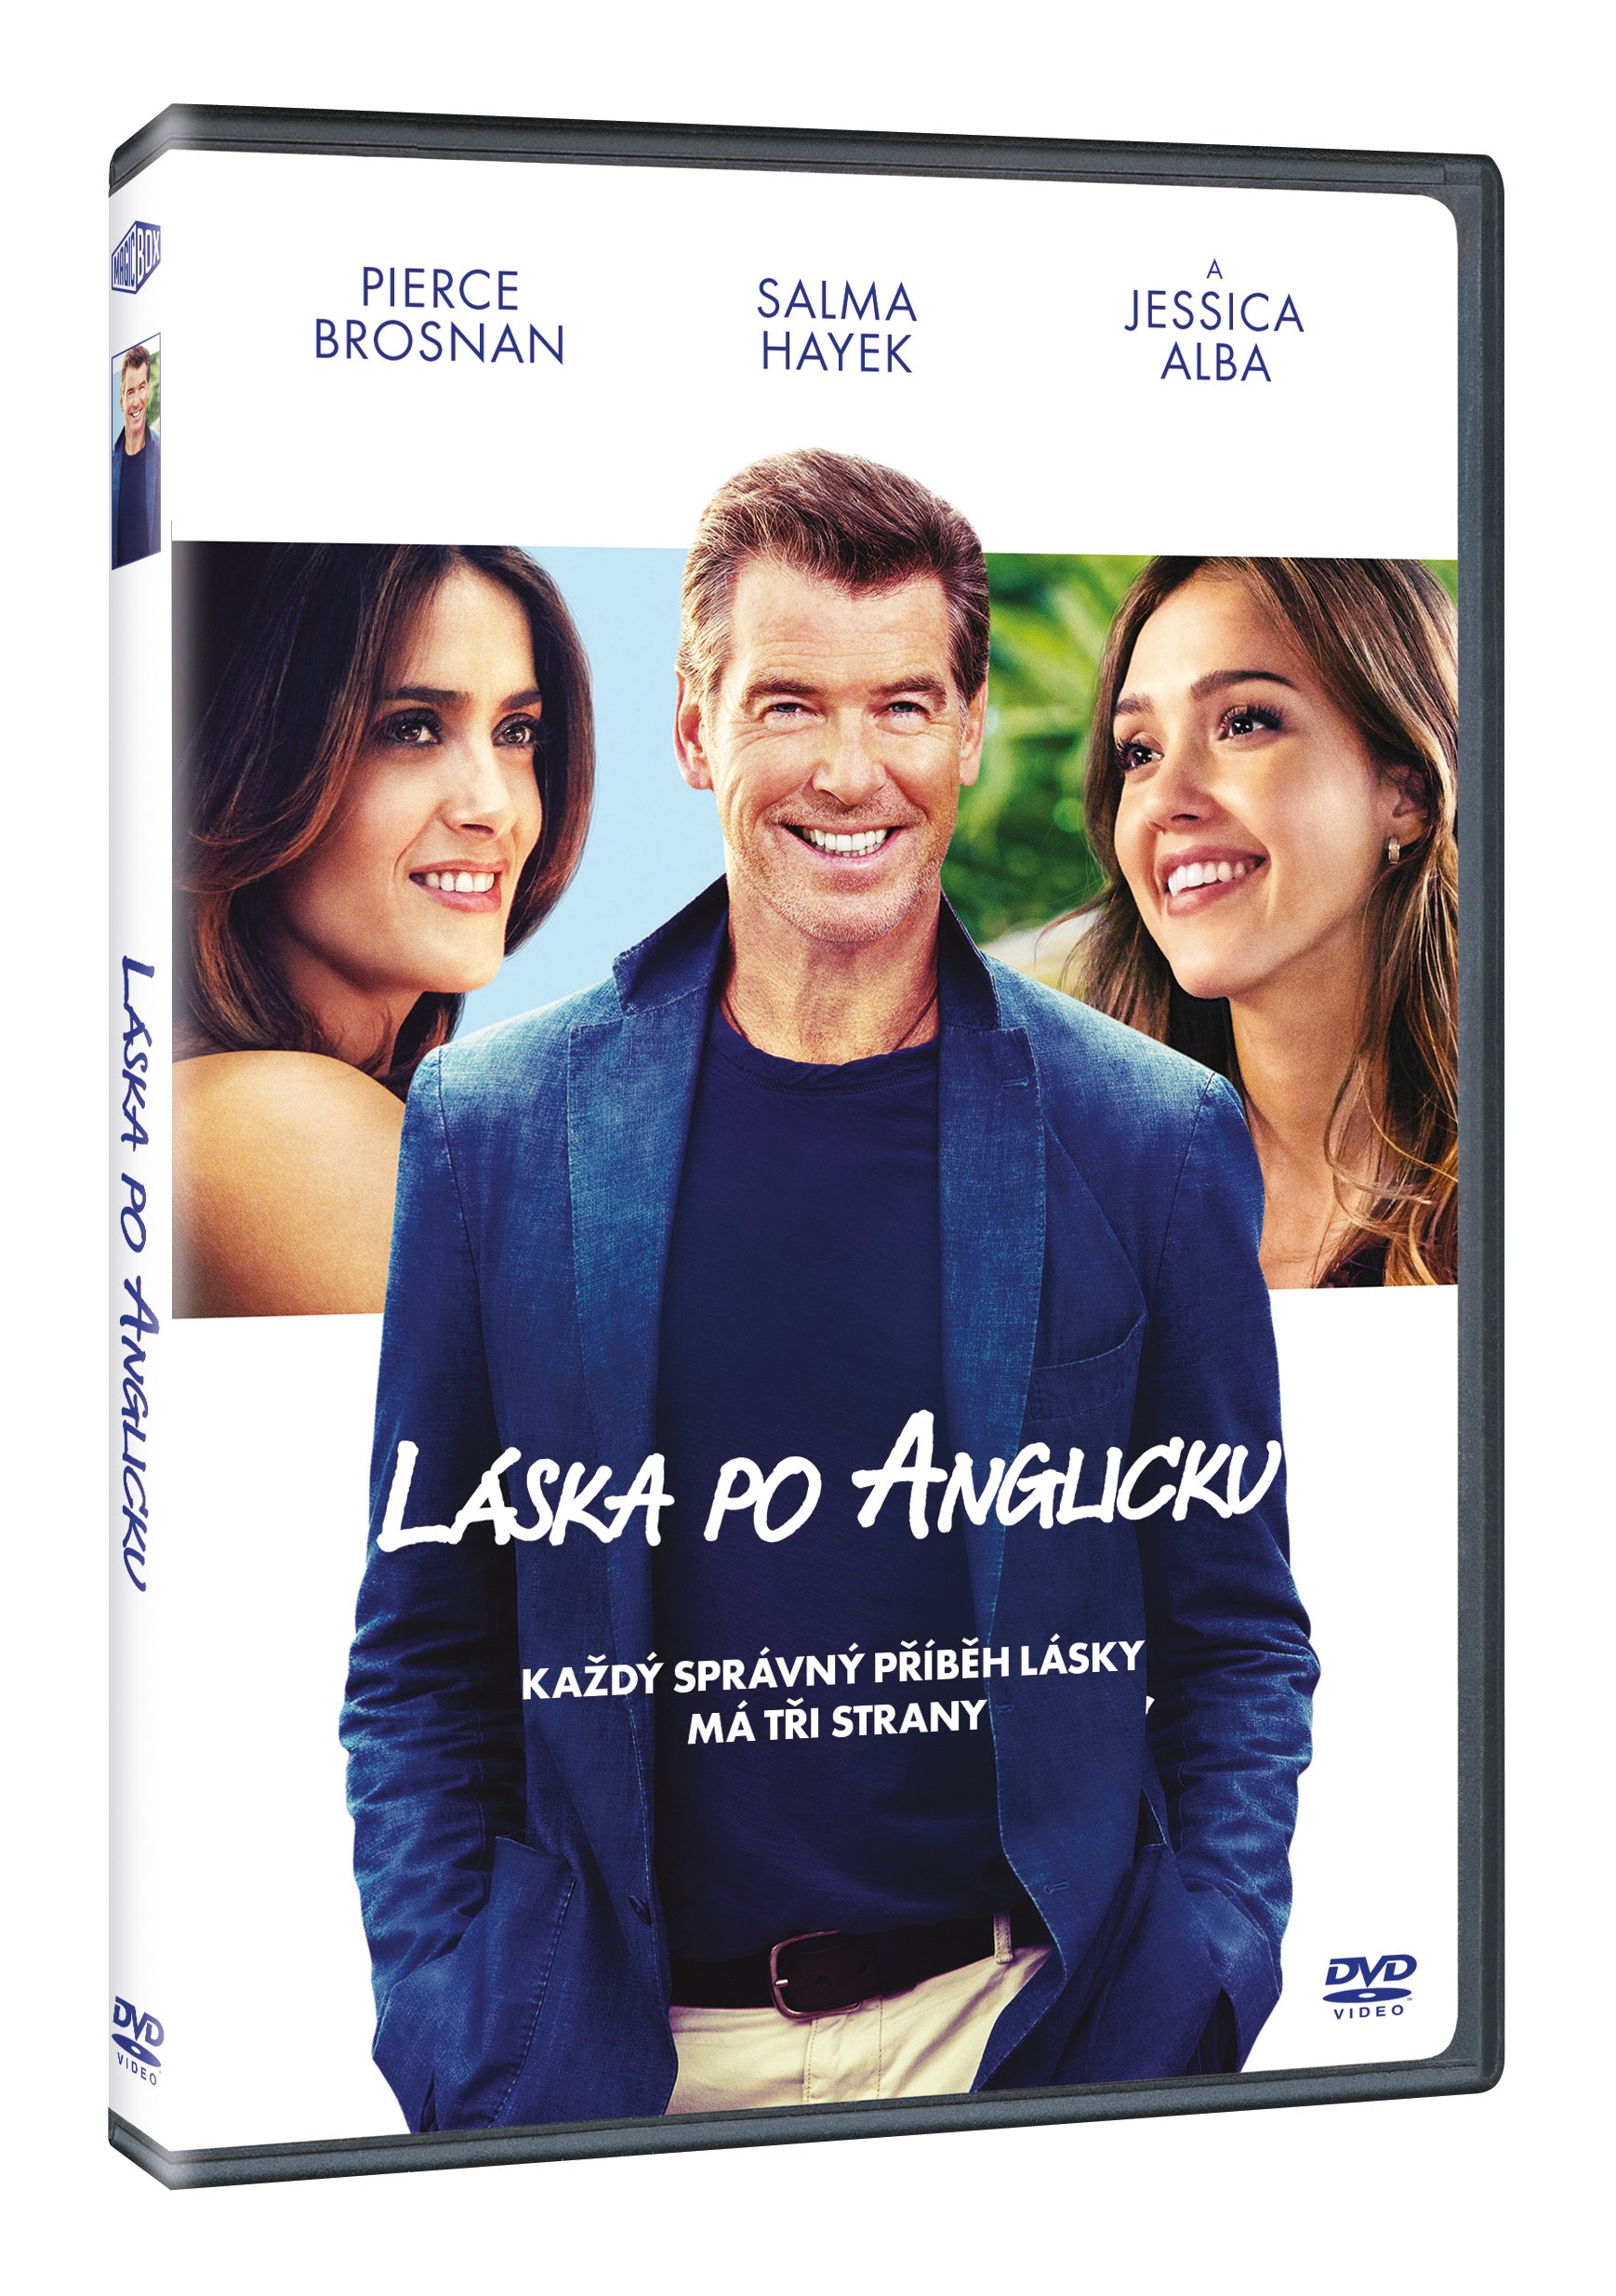 Laska po anglicku DVD / How to Make Love Like an Englishman